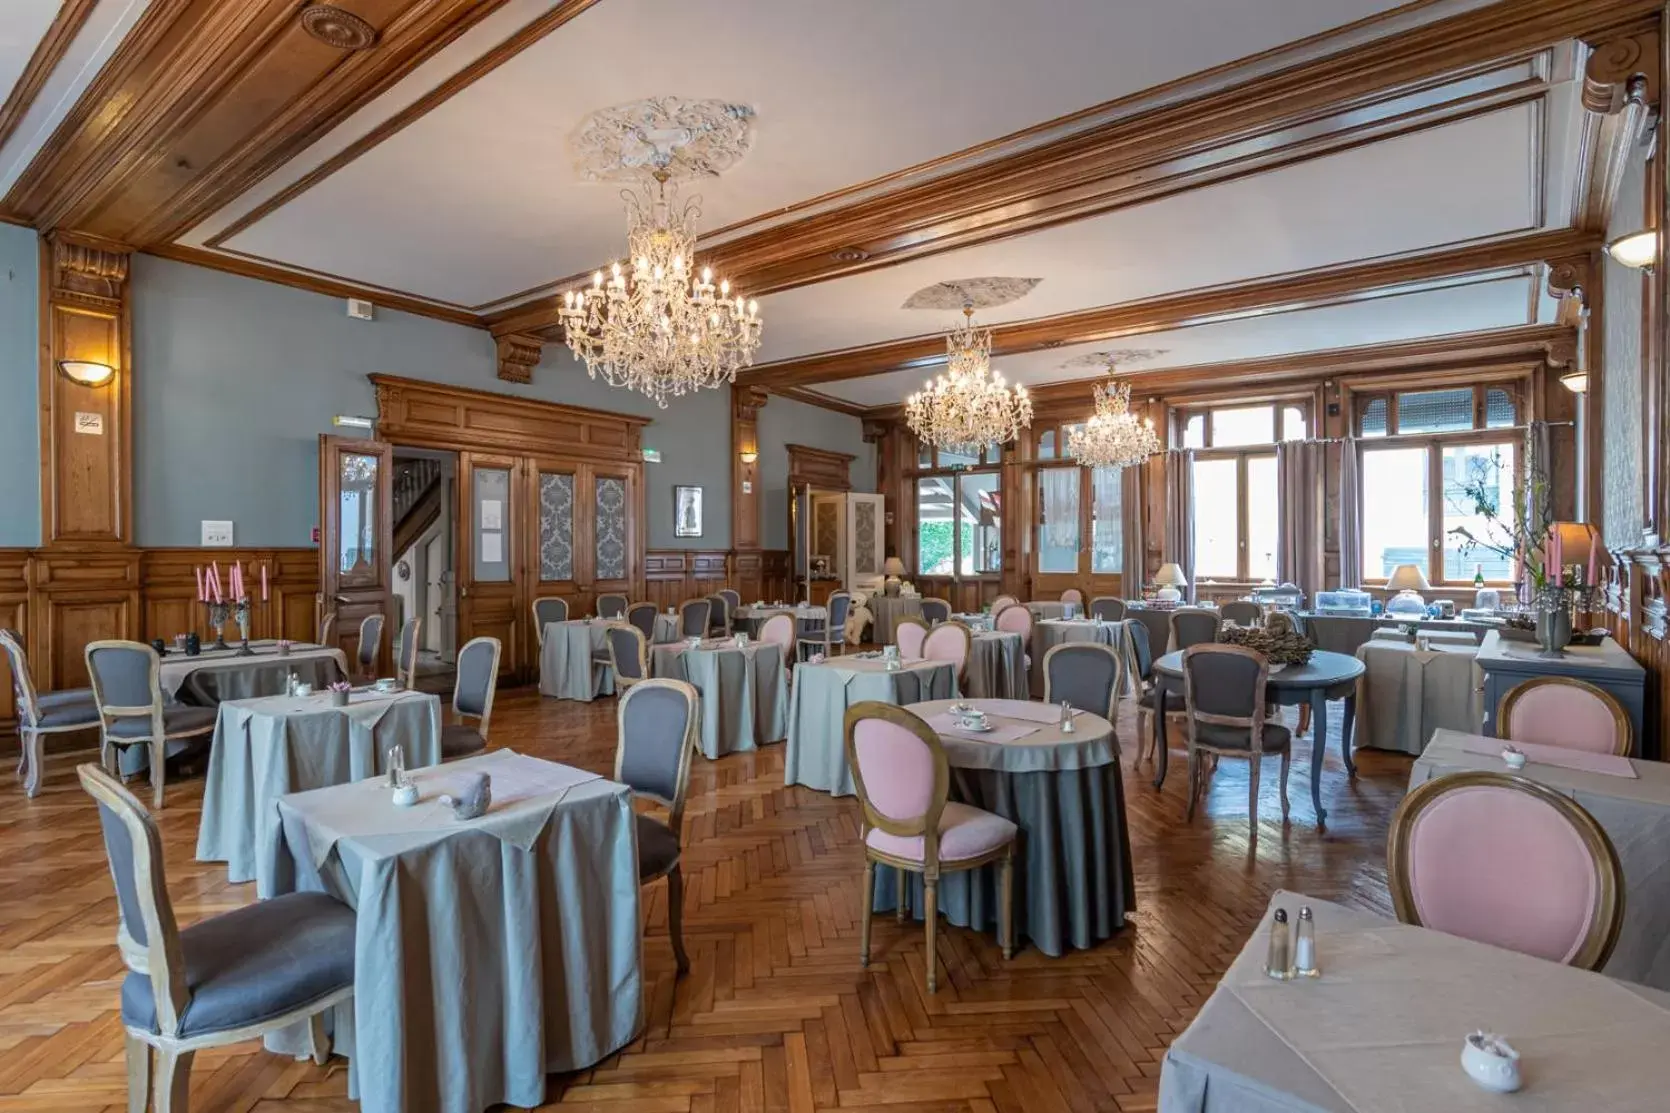 Banquet/Function facilities, Restaurant/Places to Eat in The Originals City, Hôtel de la Balance, Montbéliard